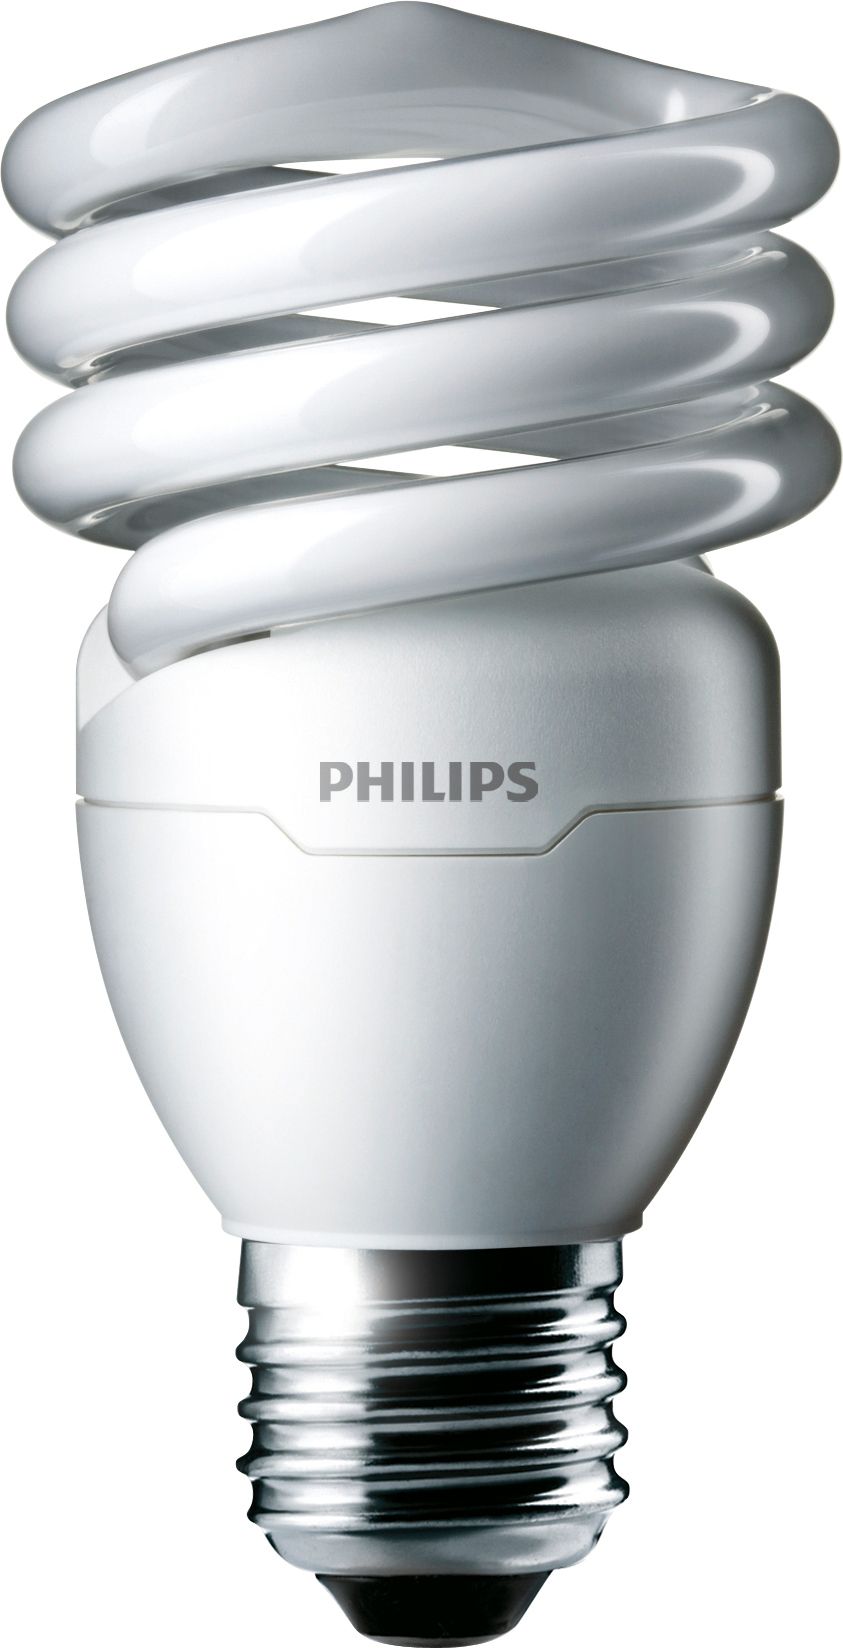 EL/mdTQS | 4.1K 26W Philips | lighting T2 929689022201